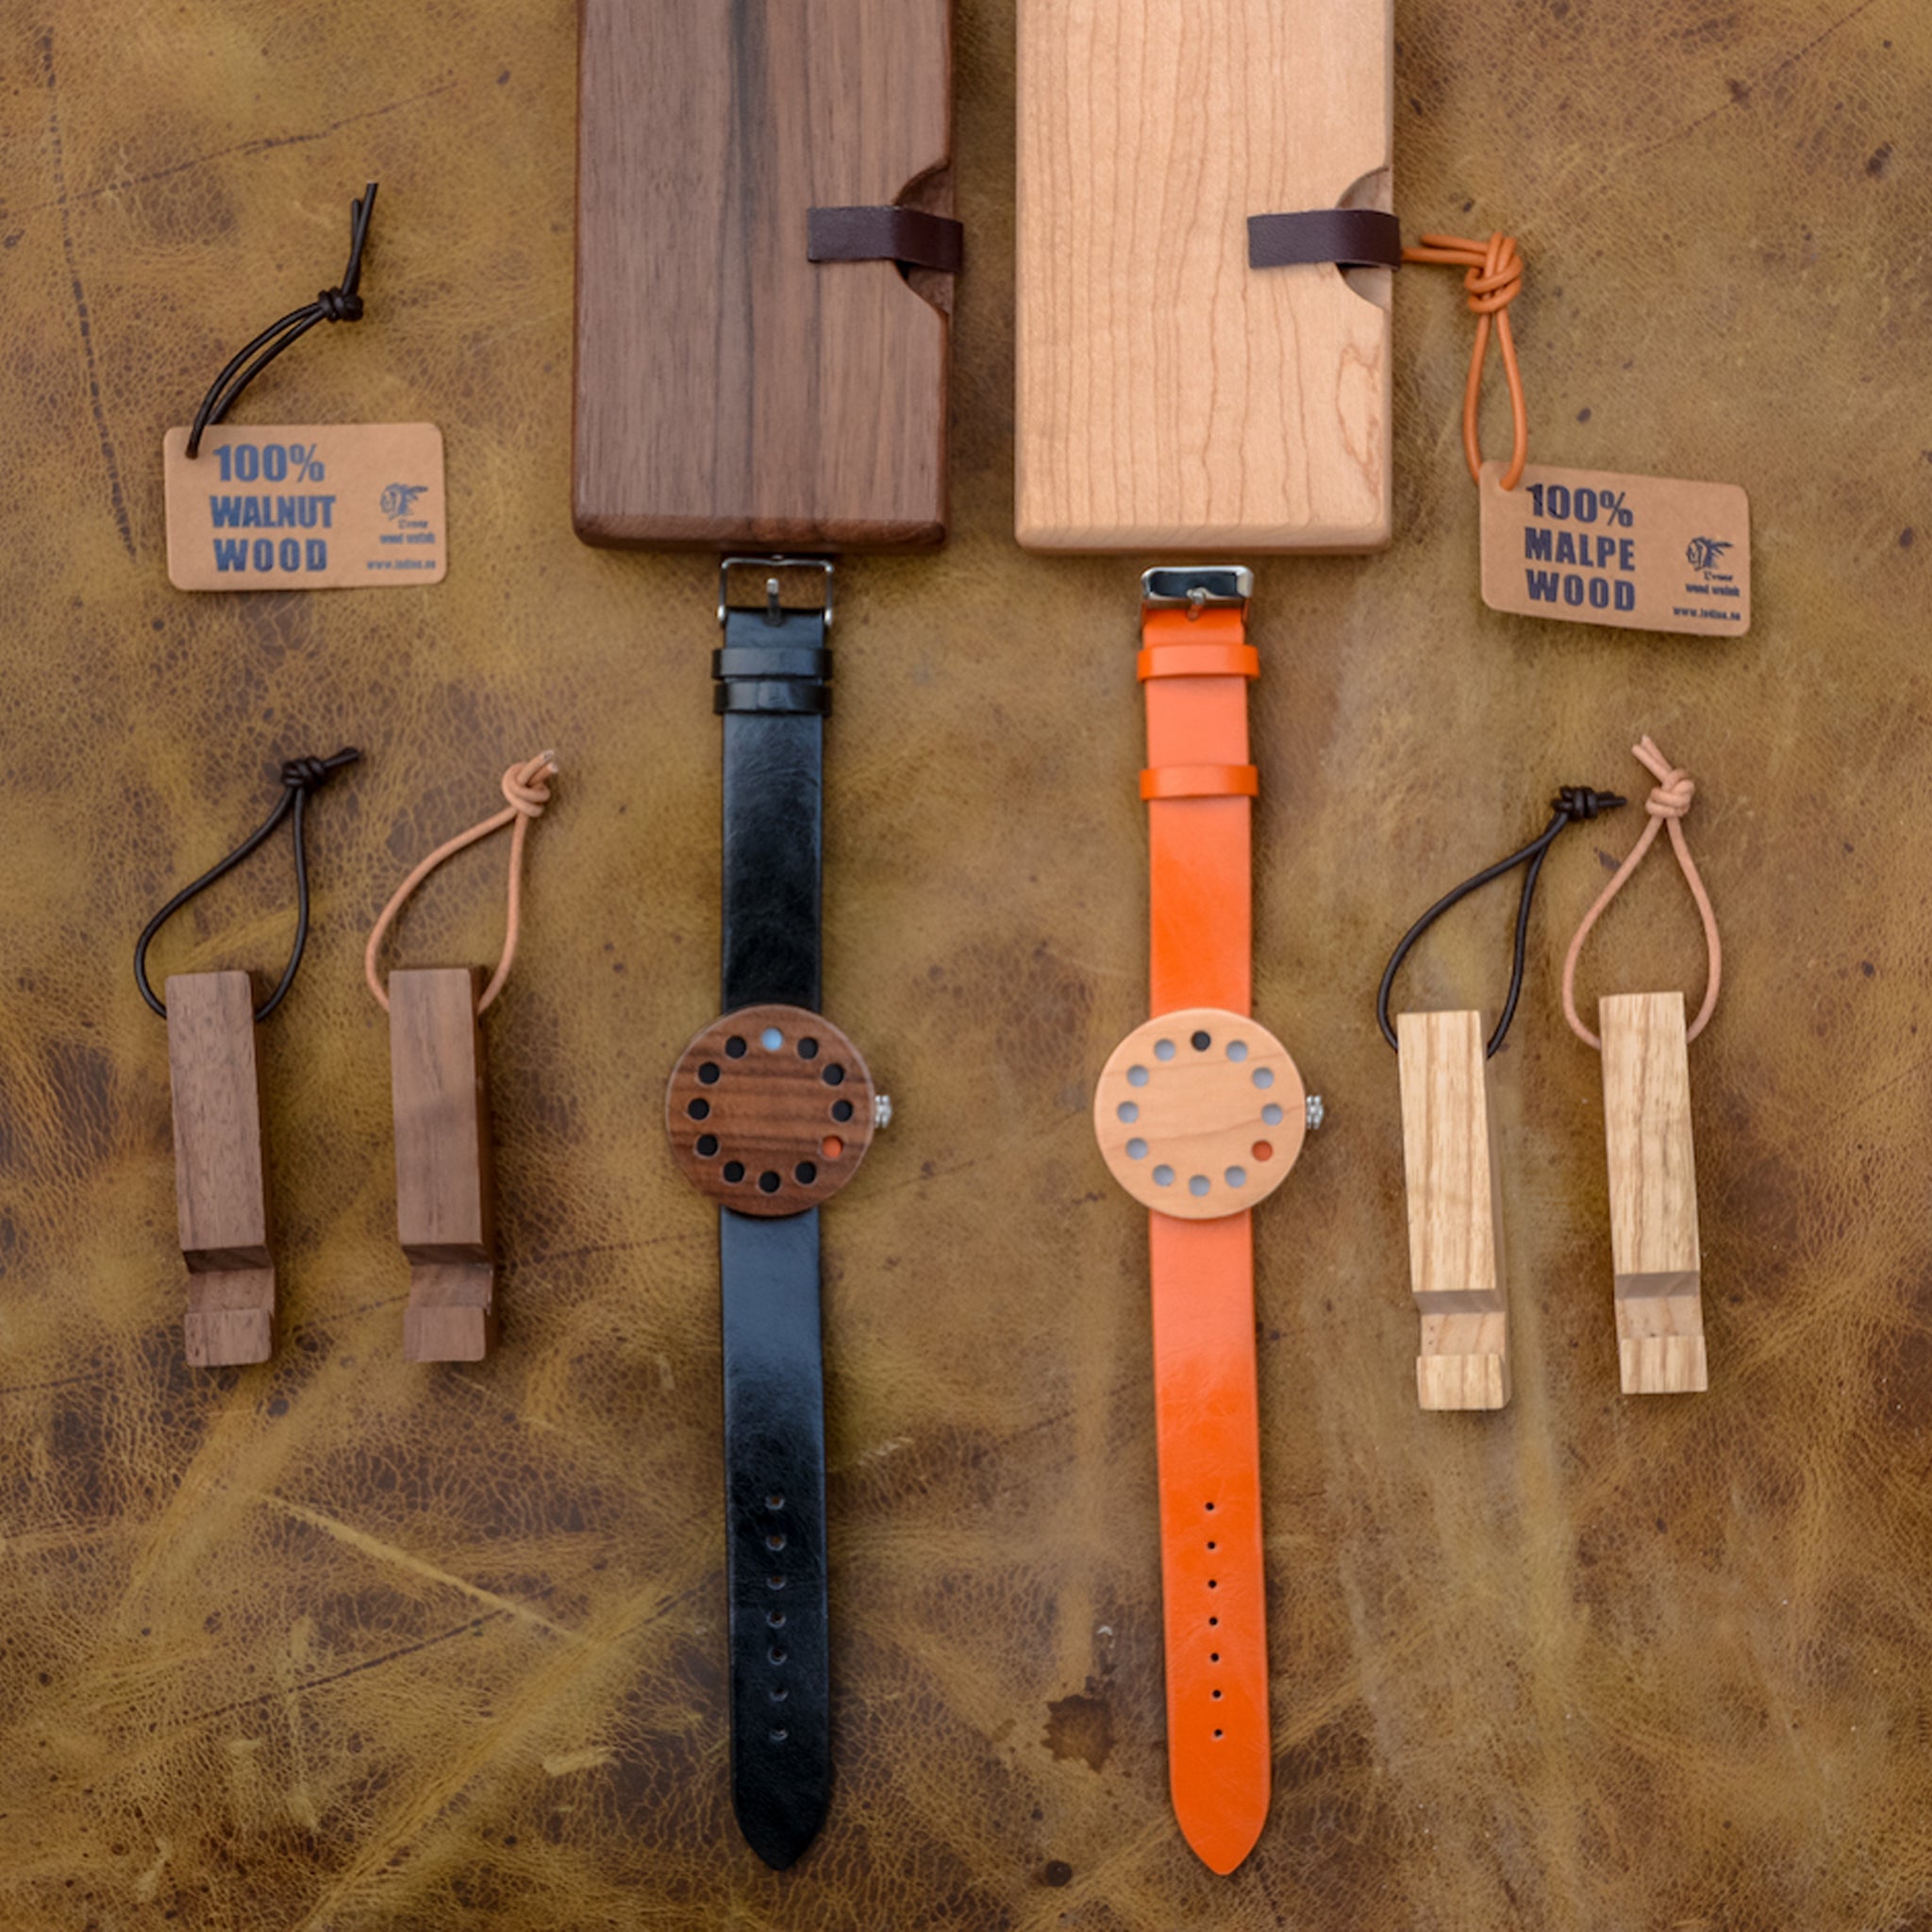 洗練されたシンプルなデザイン。 針がない木製時計「INDIOS」